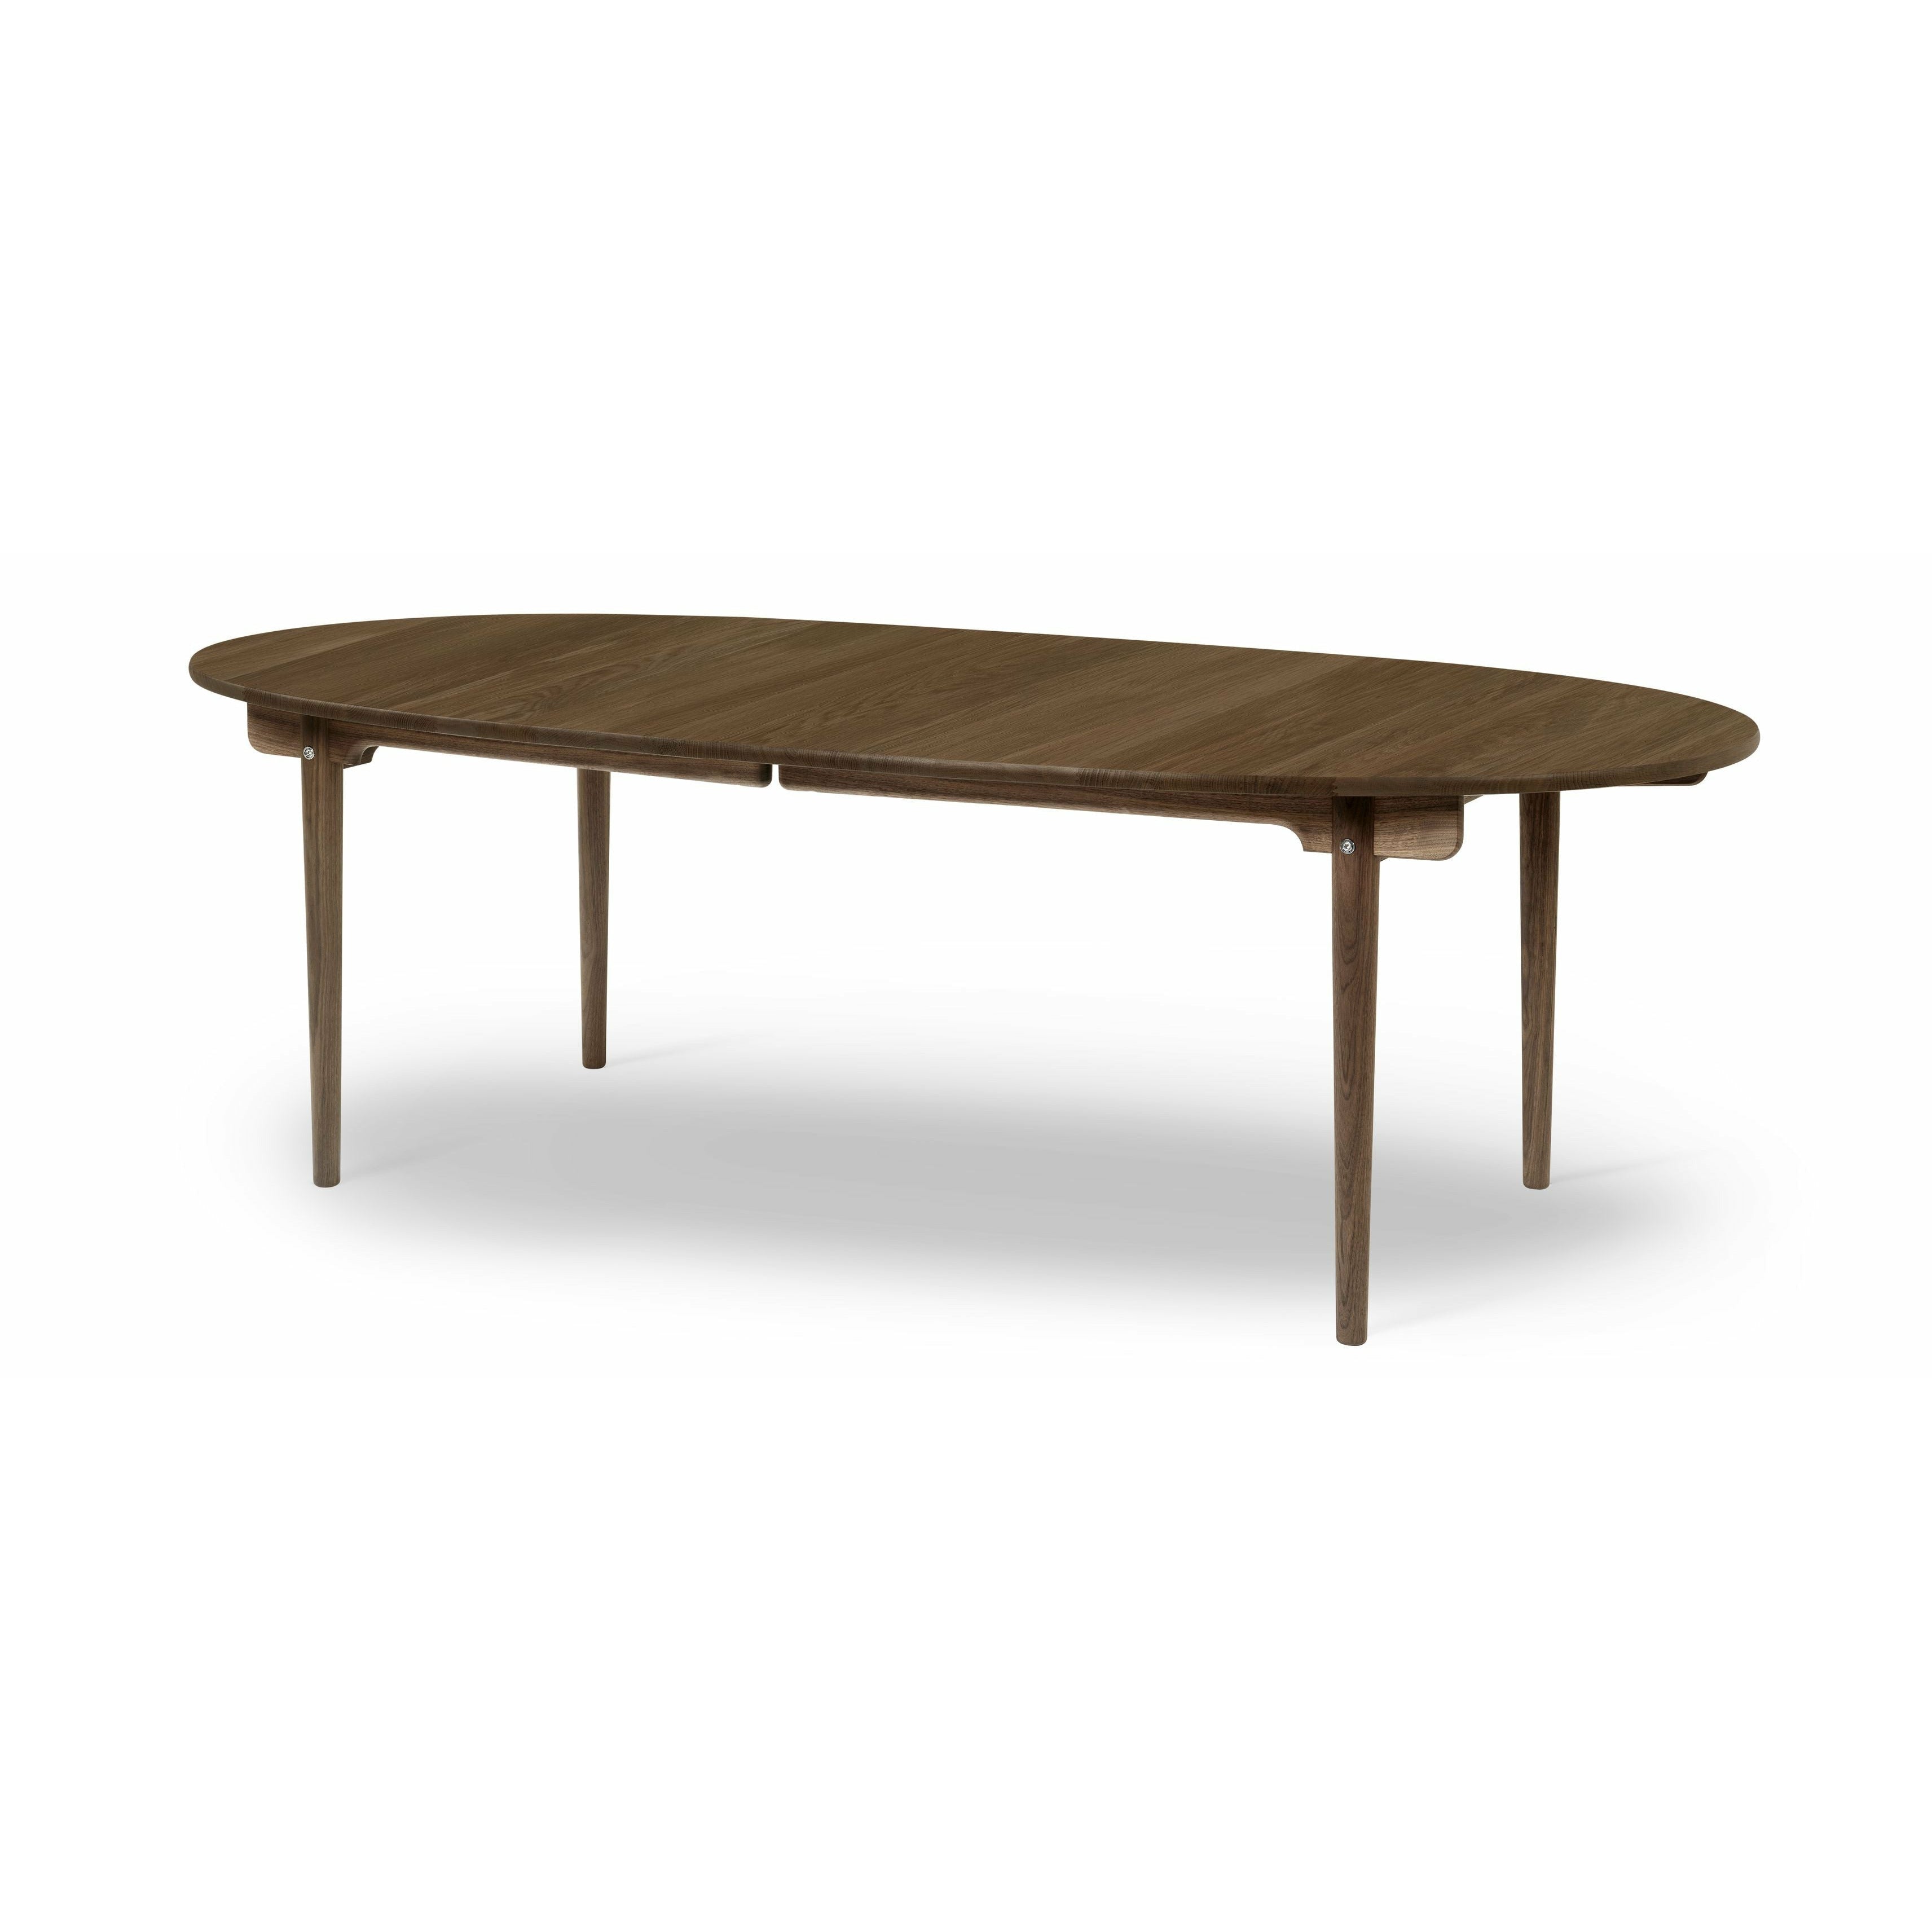 Carl Hansen CH339 matbord designad för 2 dragningsplattor, ekrökfärgad olja